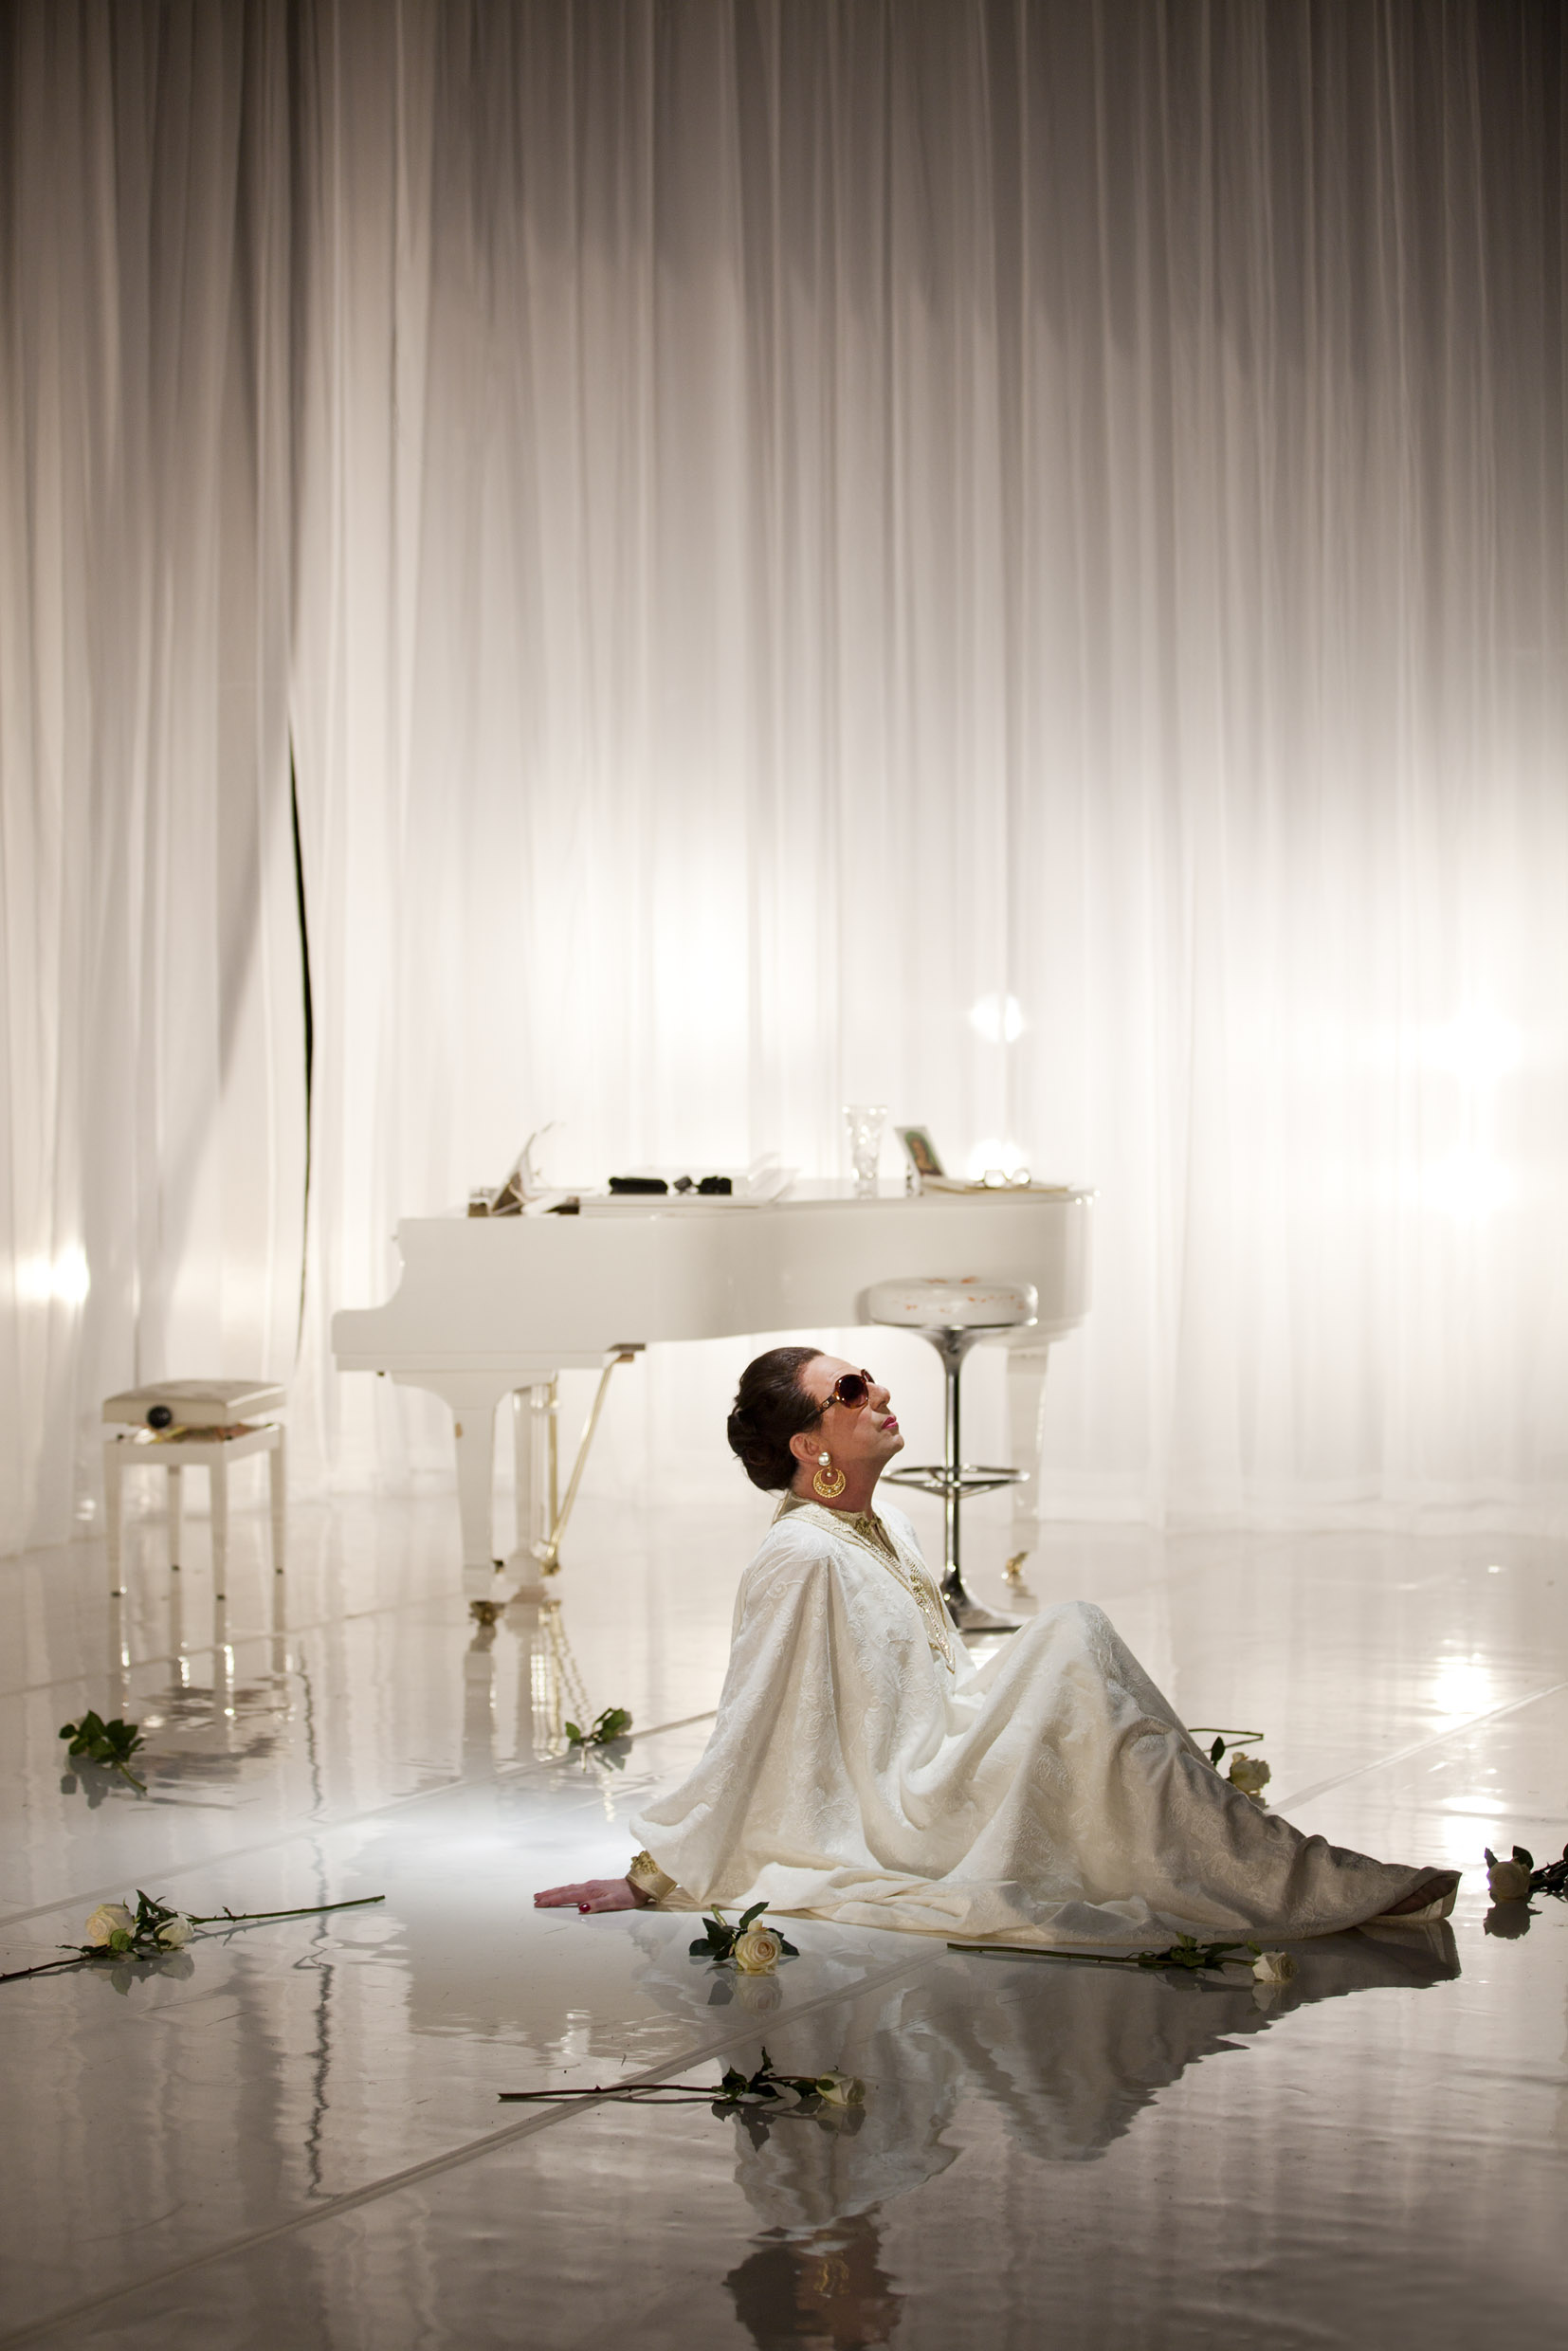 Rikard Wolff i Maria Callas - obesvarat liv. Urpremiär på Lilla scenen 11 december 2010.